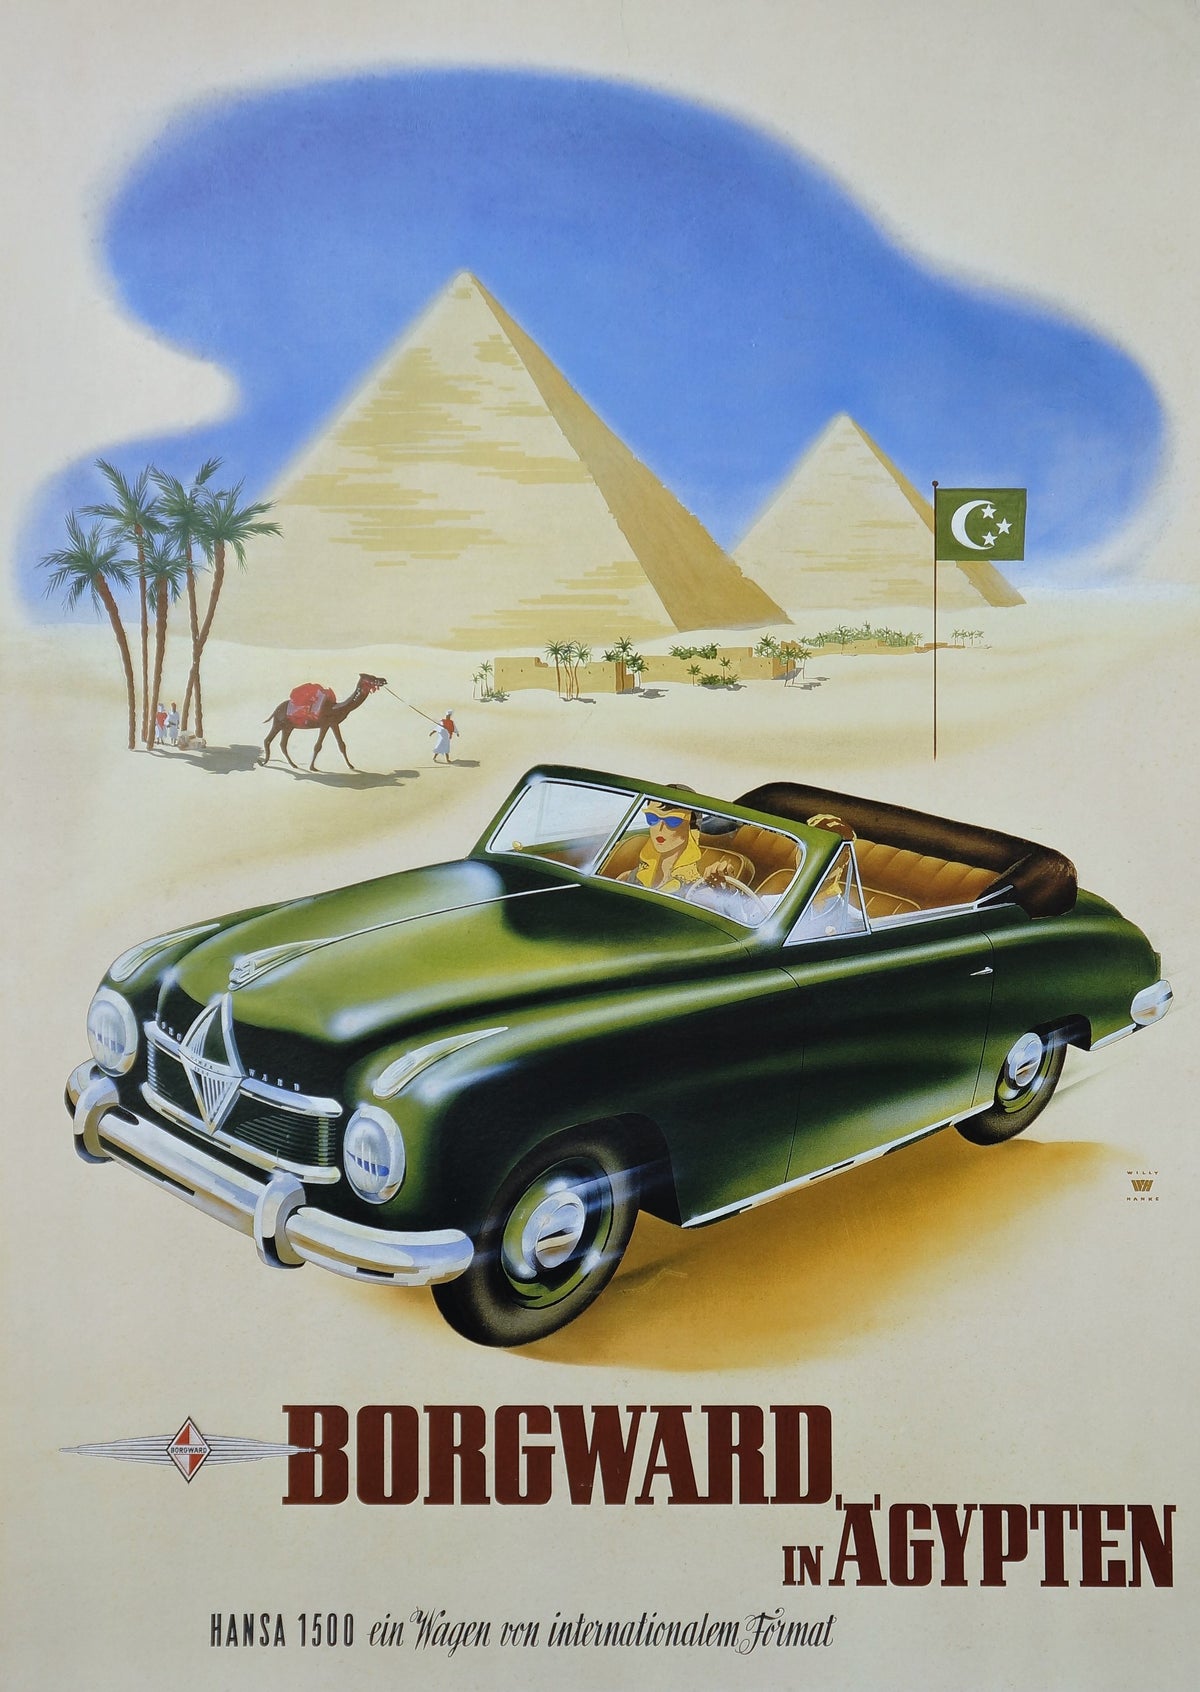 Borgward Automobiles - Authentic Vintage Poster